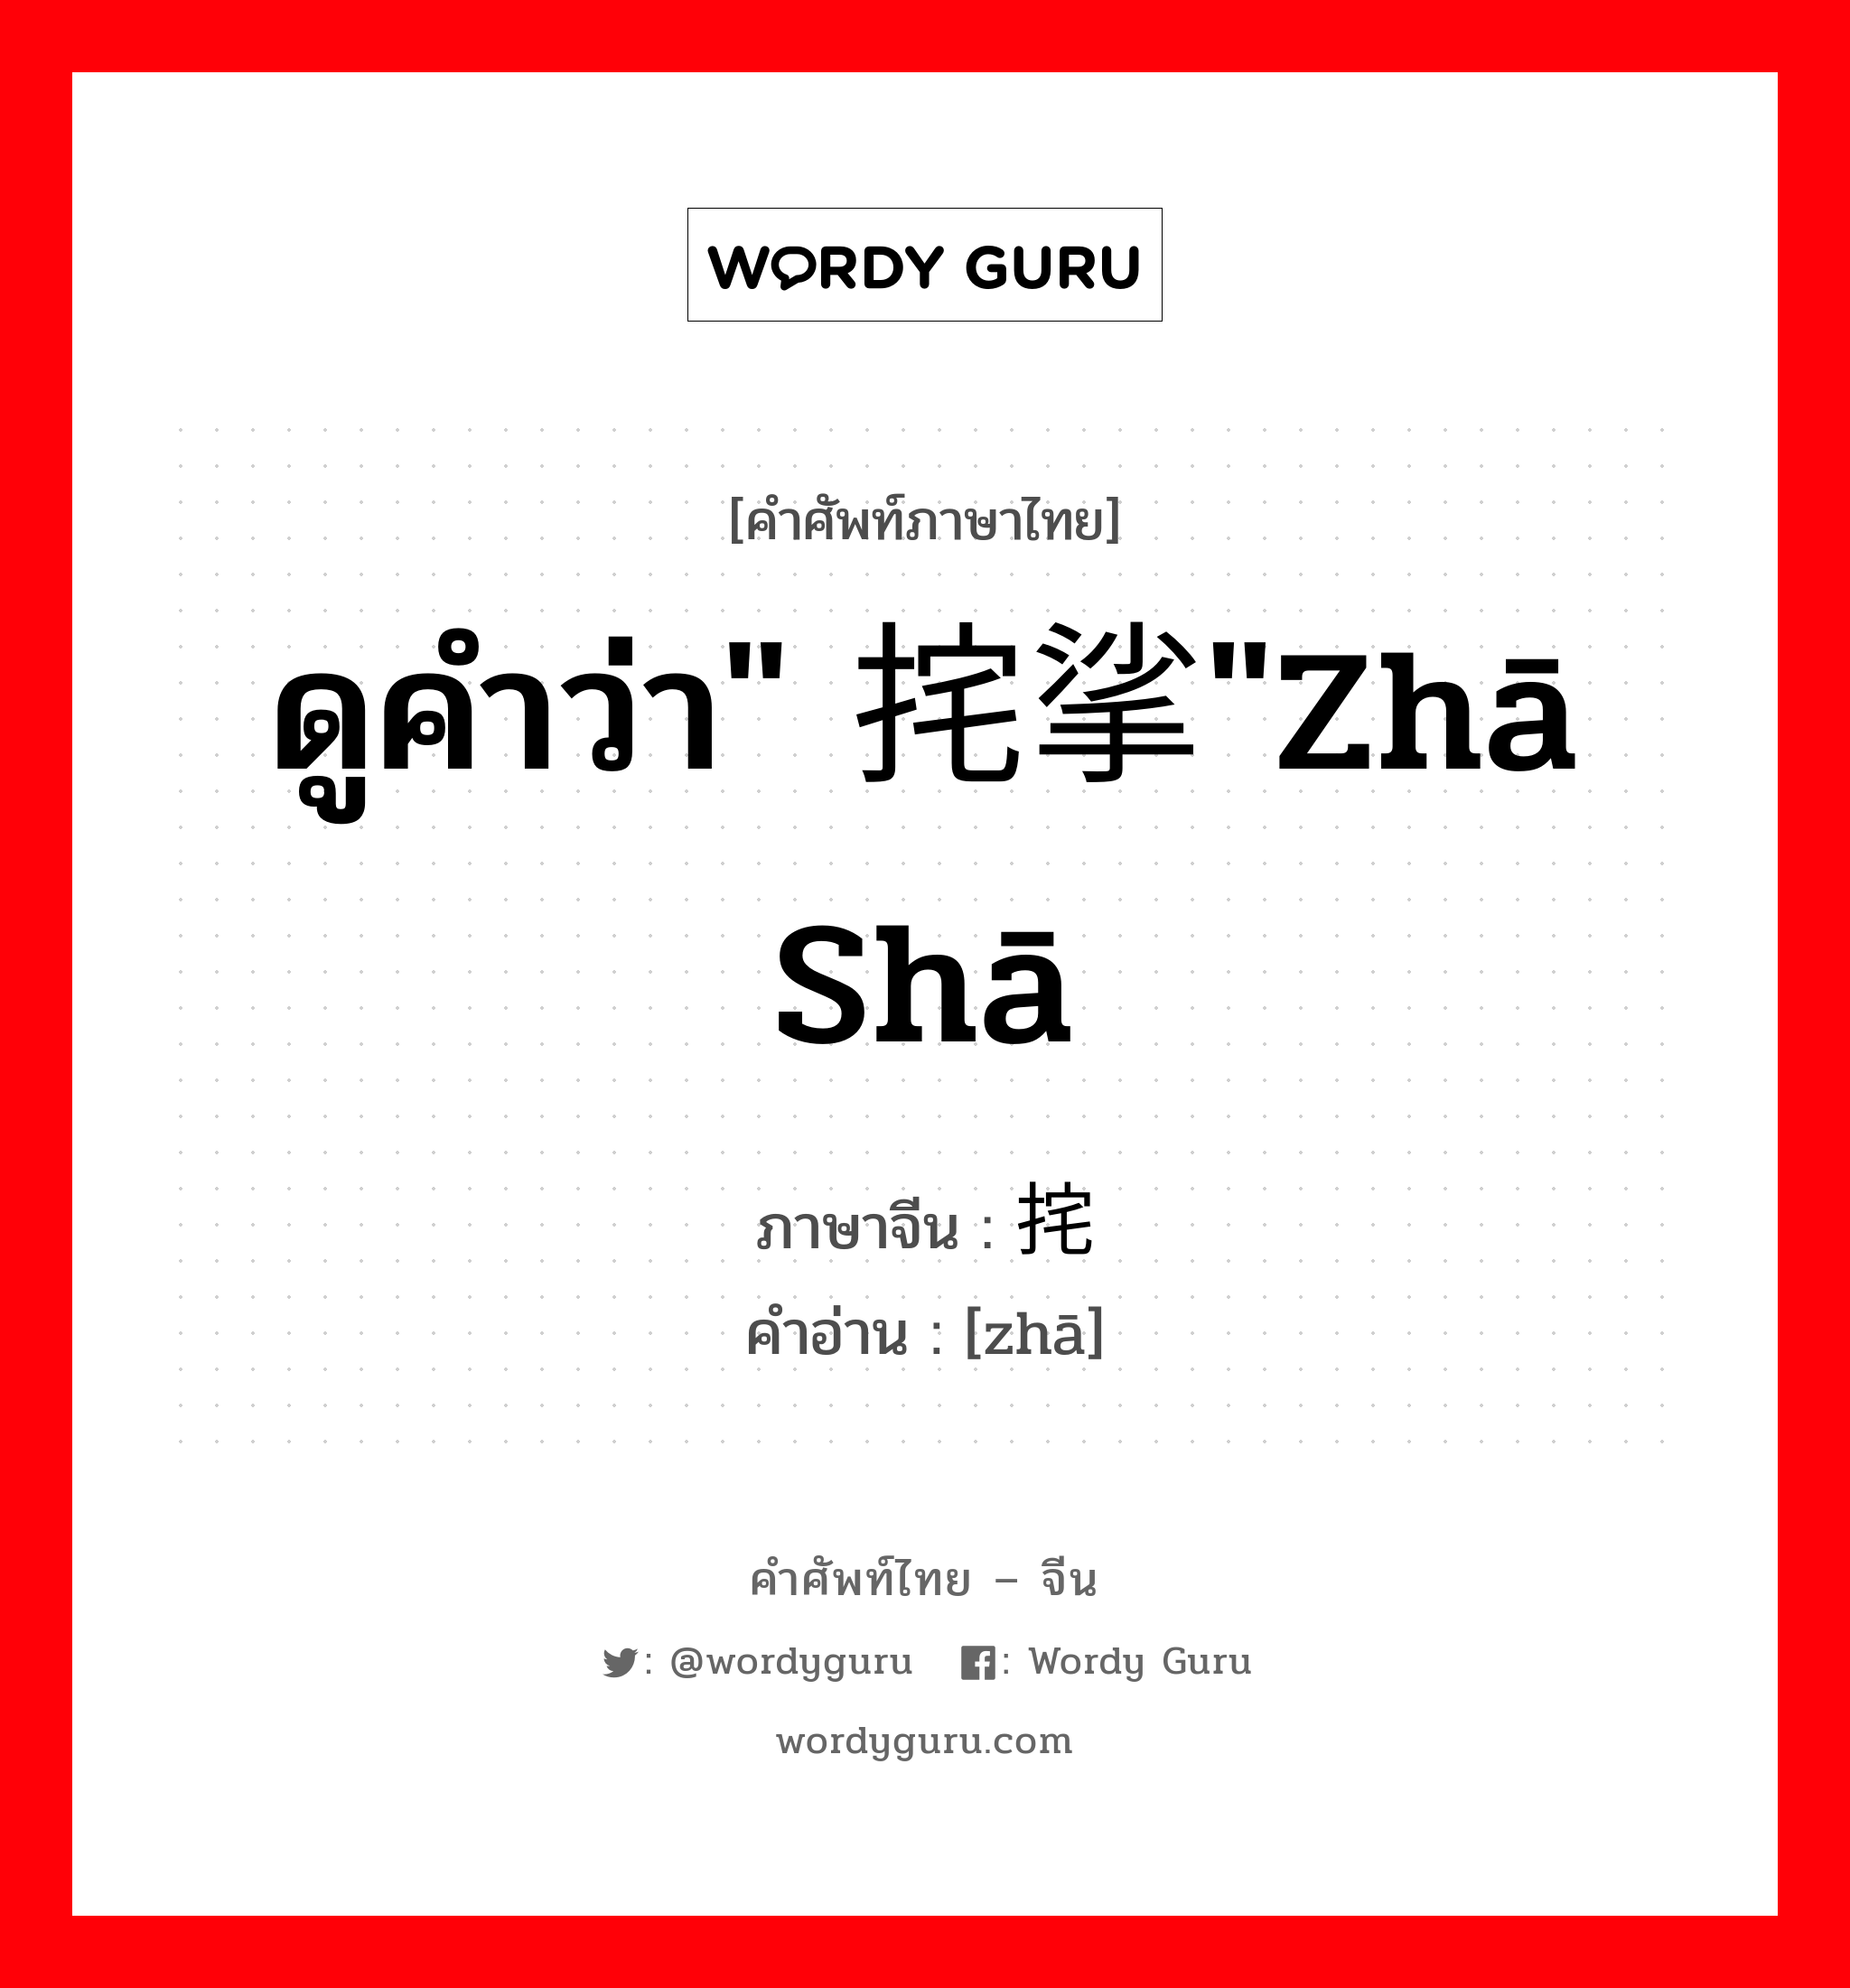 ดูคำว่า" 挓挲"zhā shā ภาษาจีนคืออะไร, คำศัพท์ภาษาไทย - จีน ดูคำว่า" 挓挲"zhā shā ภาษาจีน 挓 คำอ่าน [zhā]